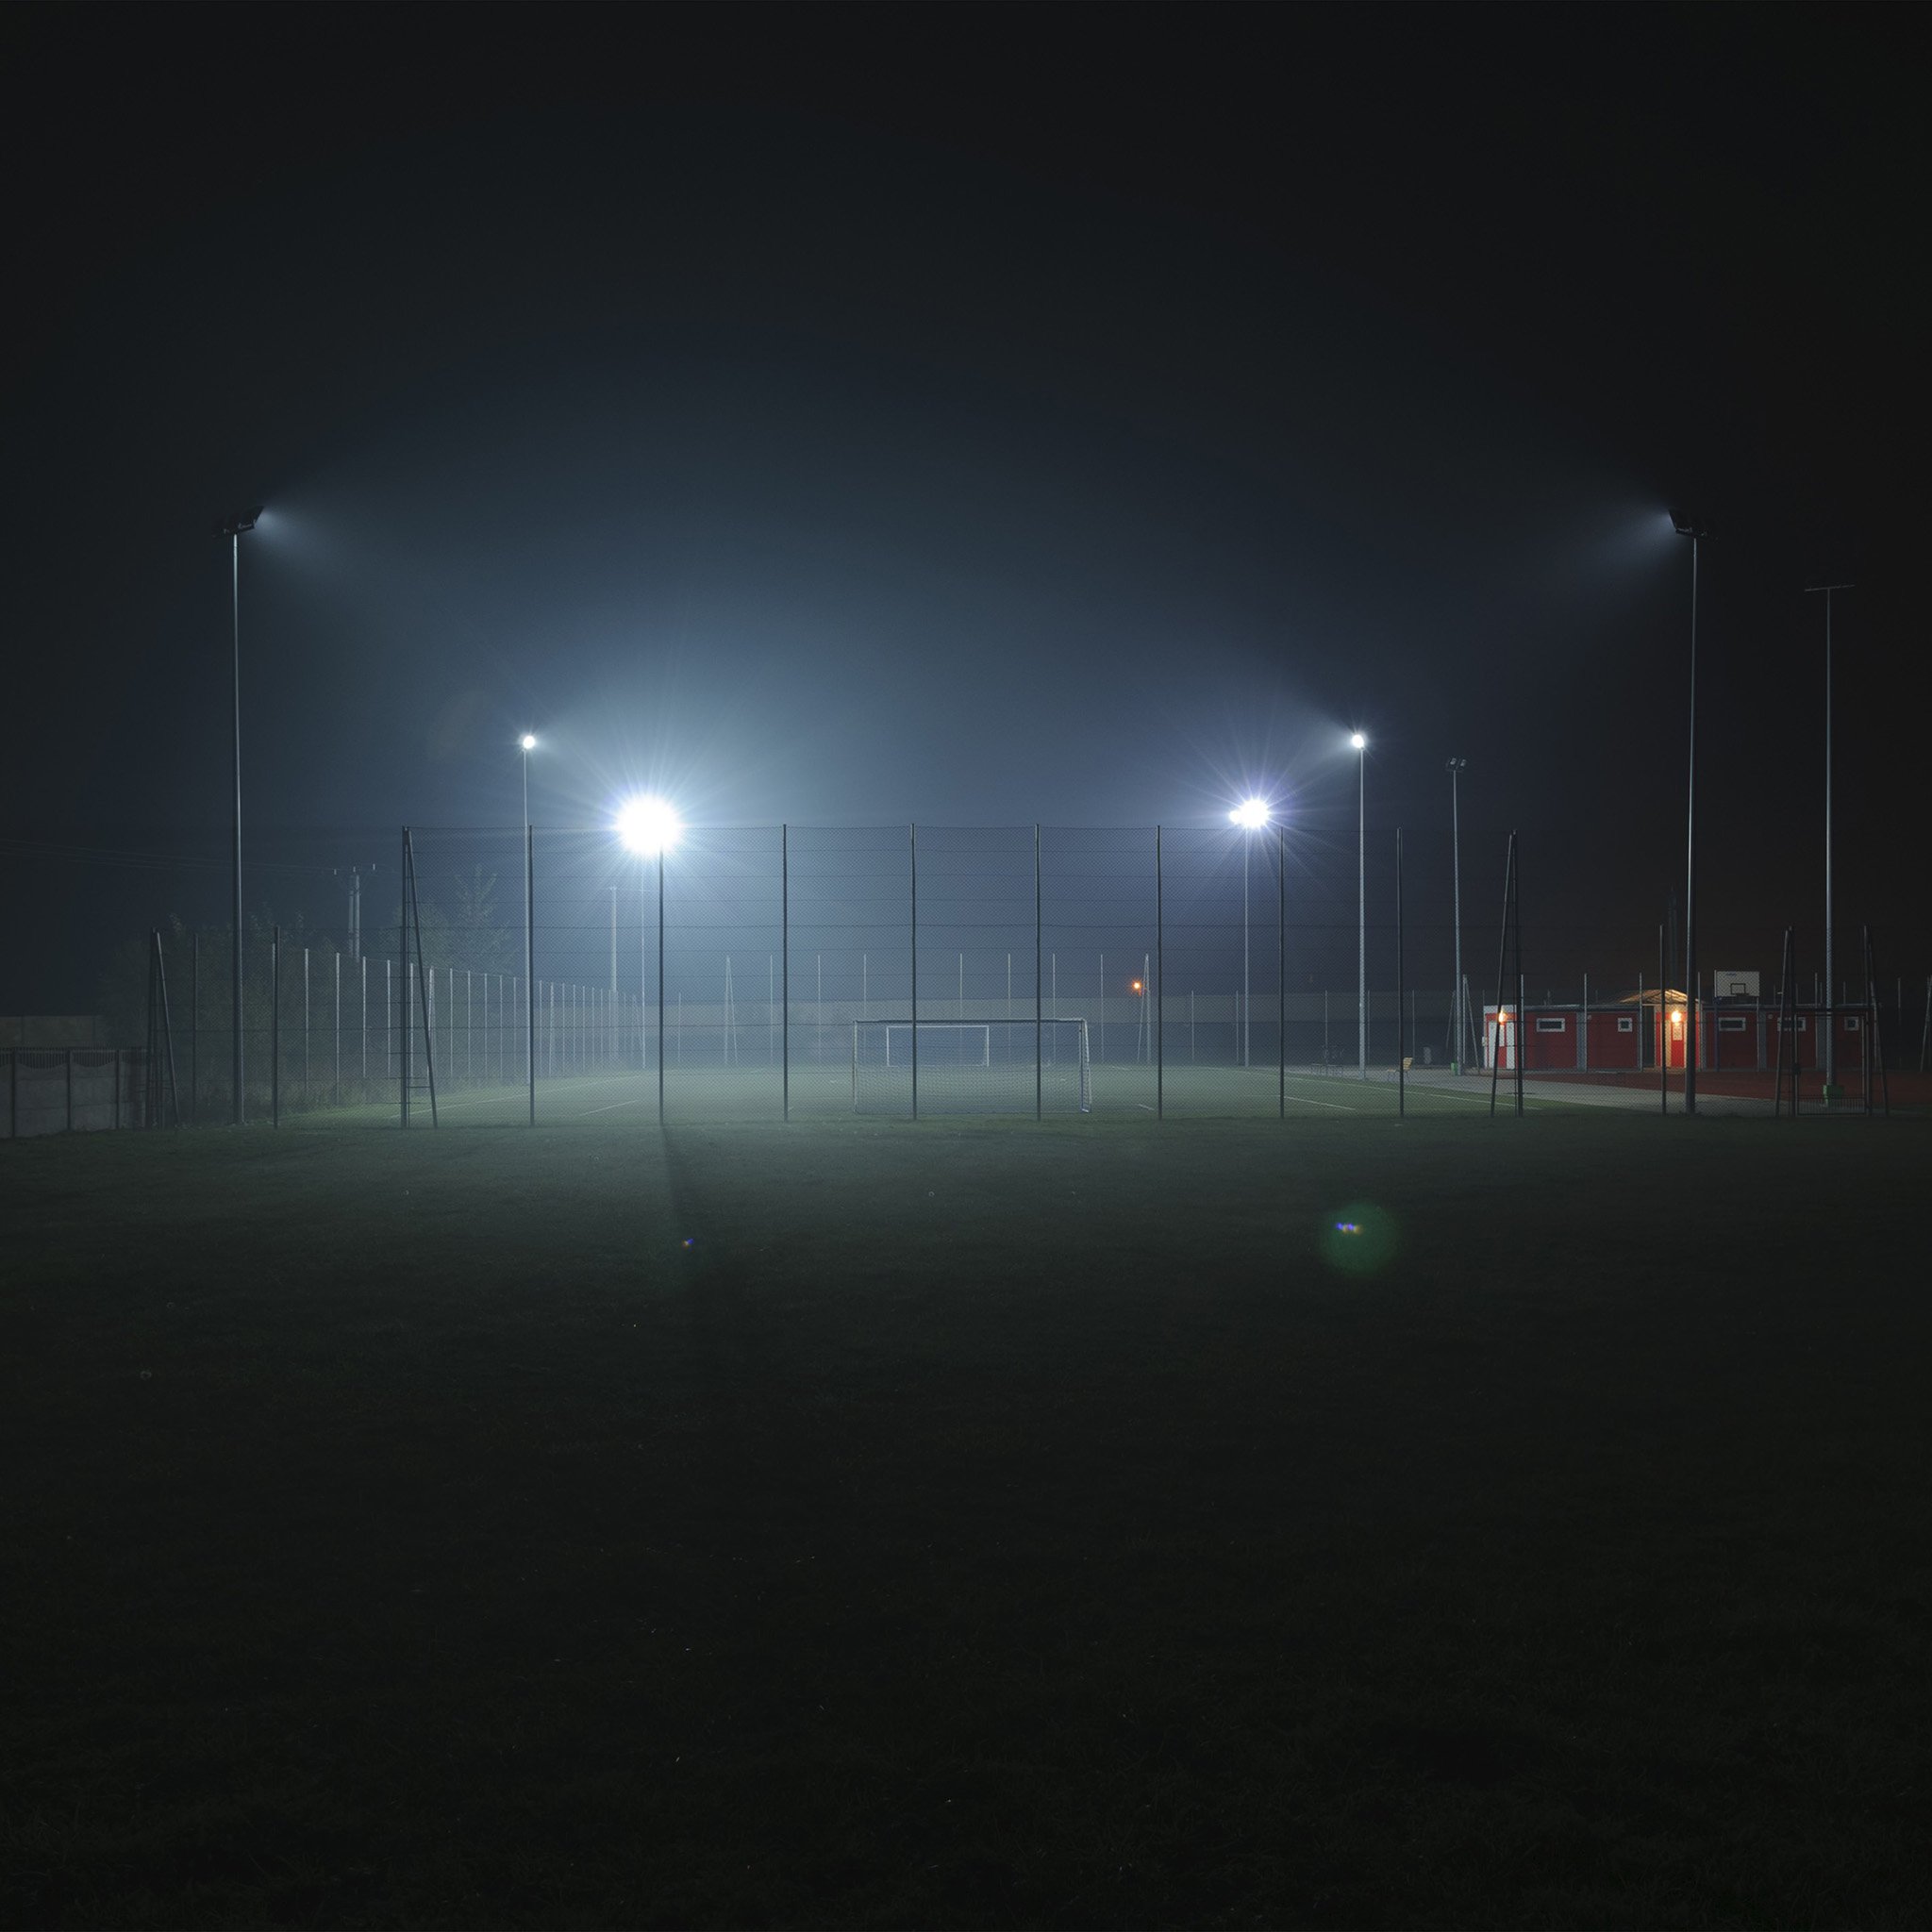 Soccer Field At Night - HD Wallpaper 